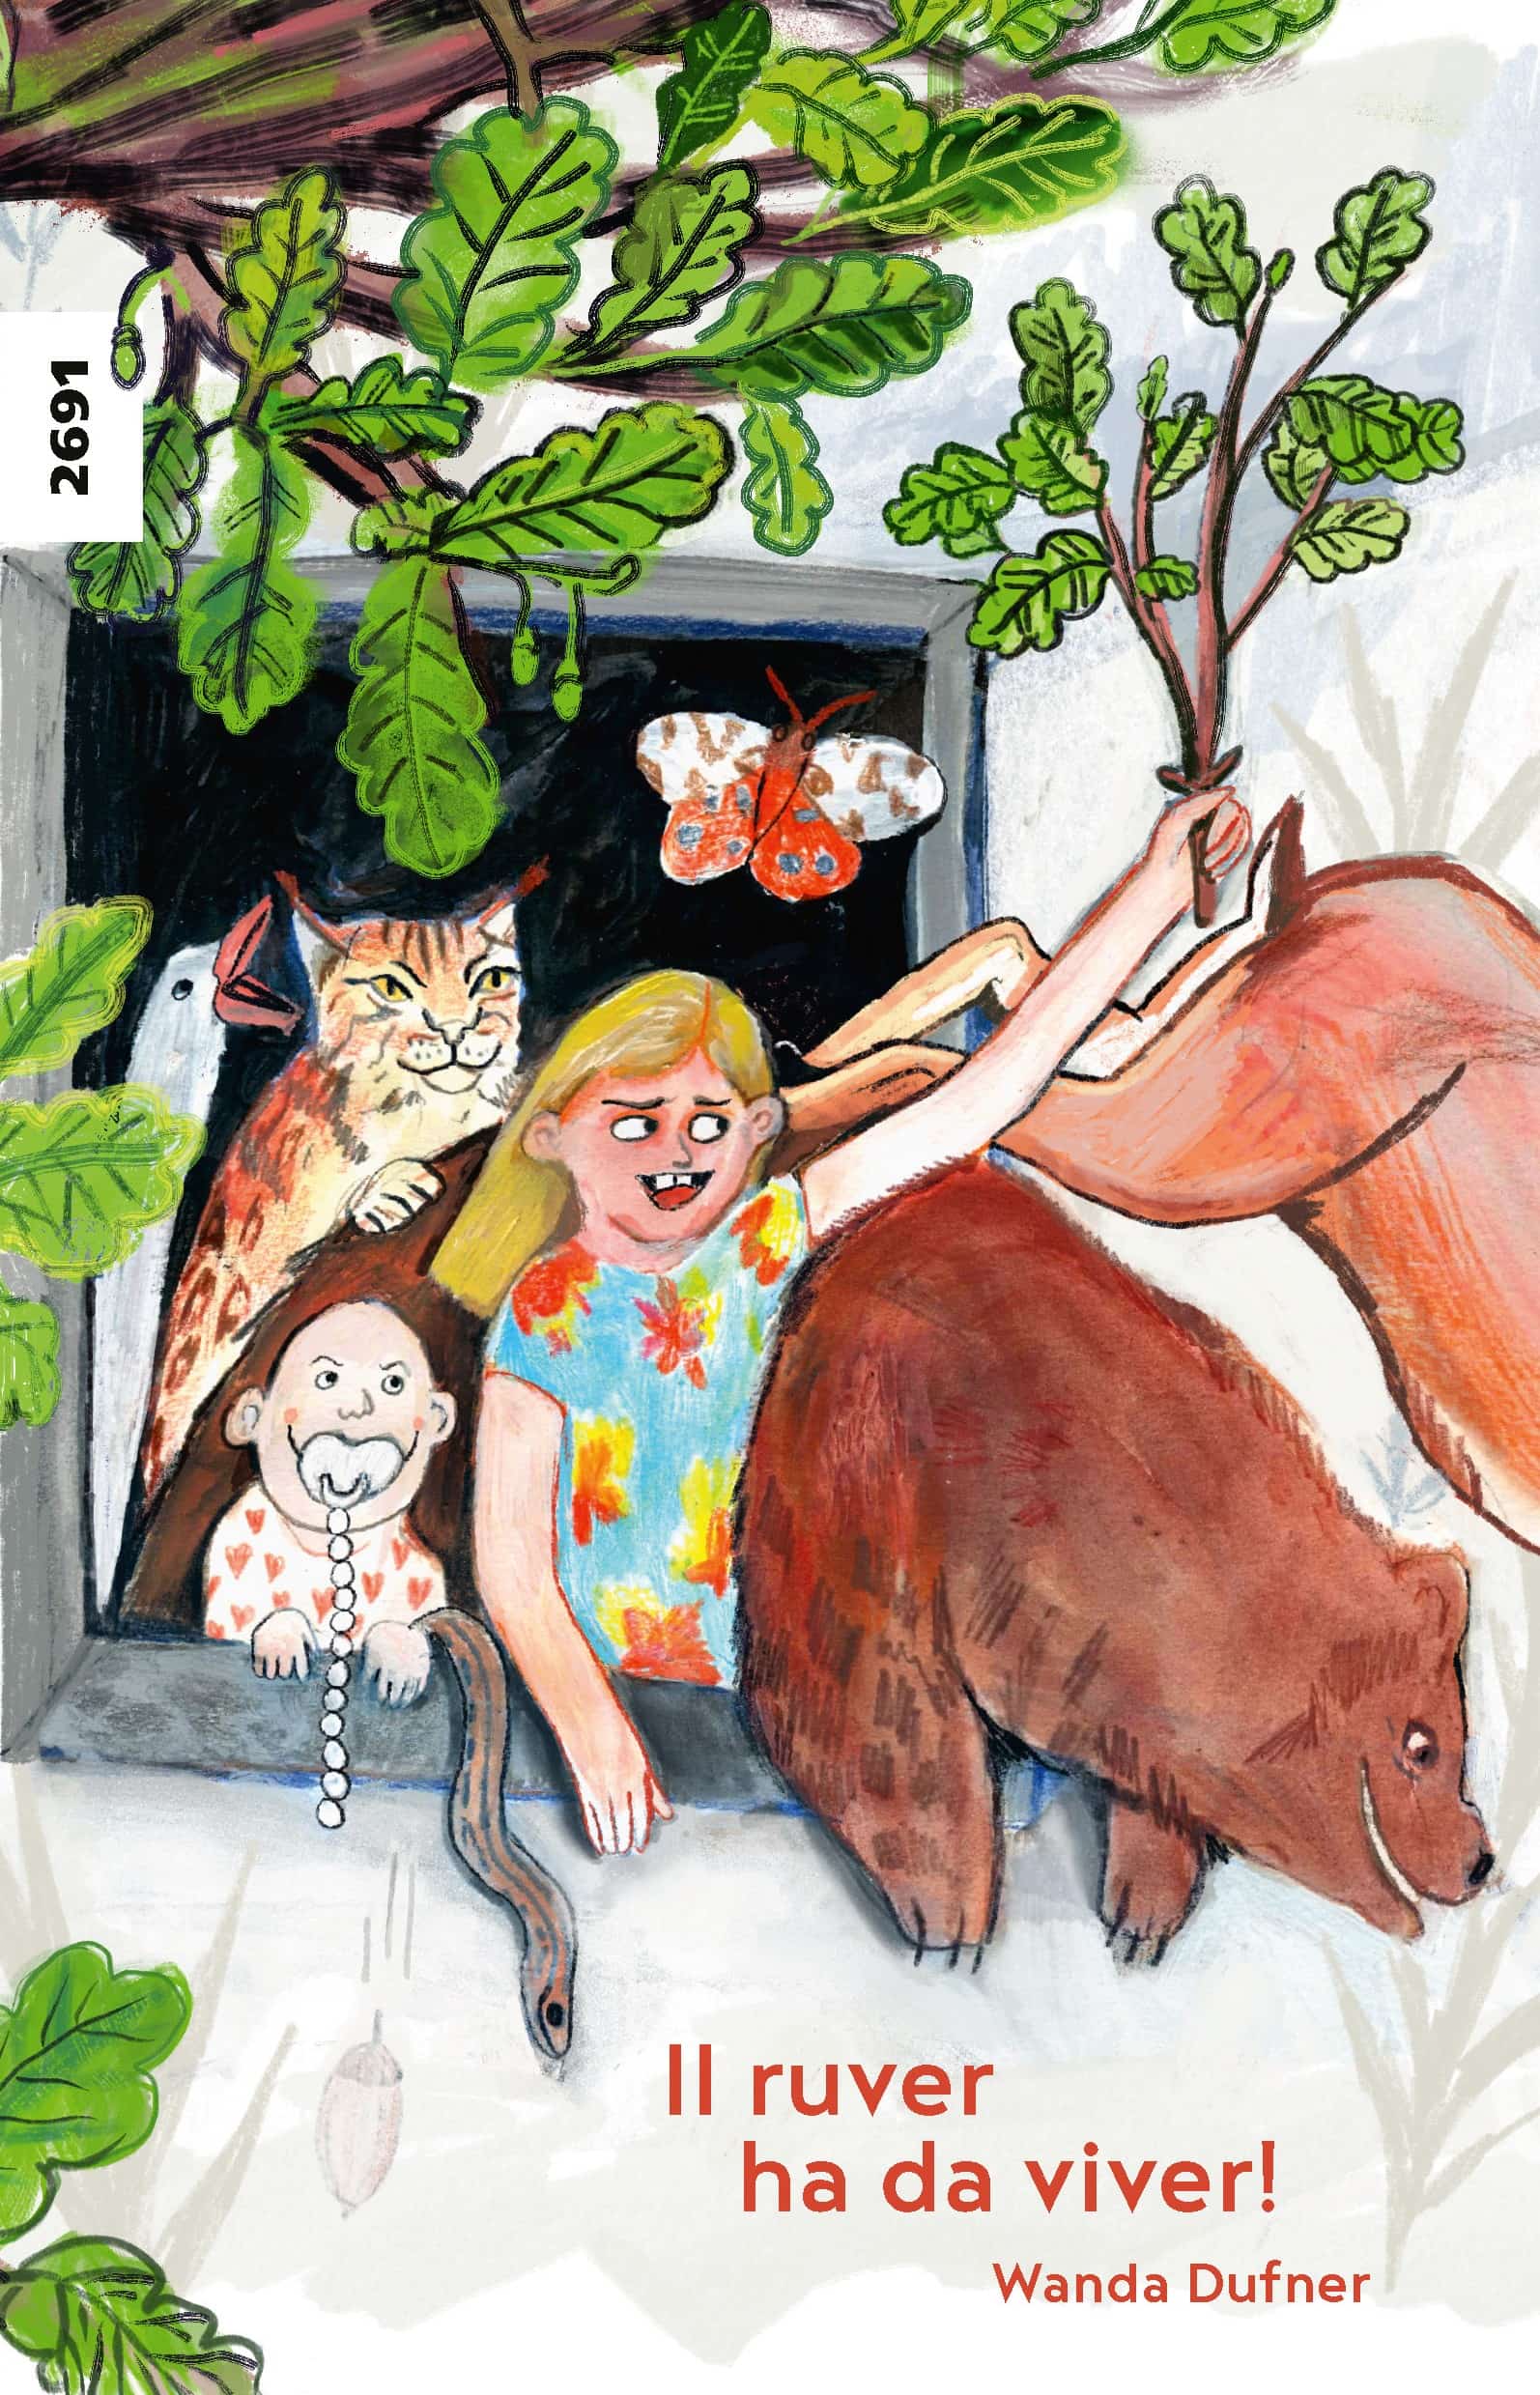 Il ruver ha da viver!, ein Kinderbuch von Wanda Dufner, SJW Verlag, Comic, Tiere